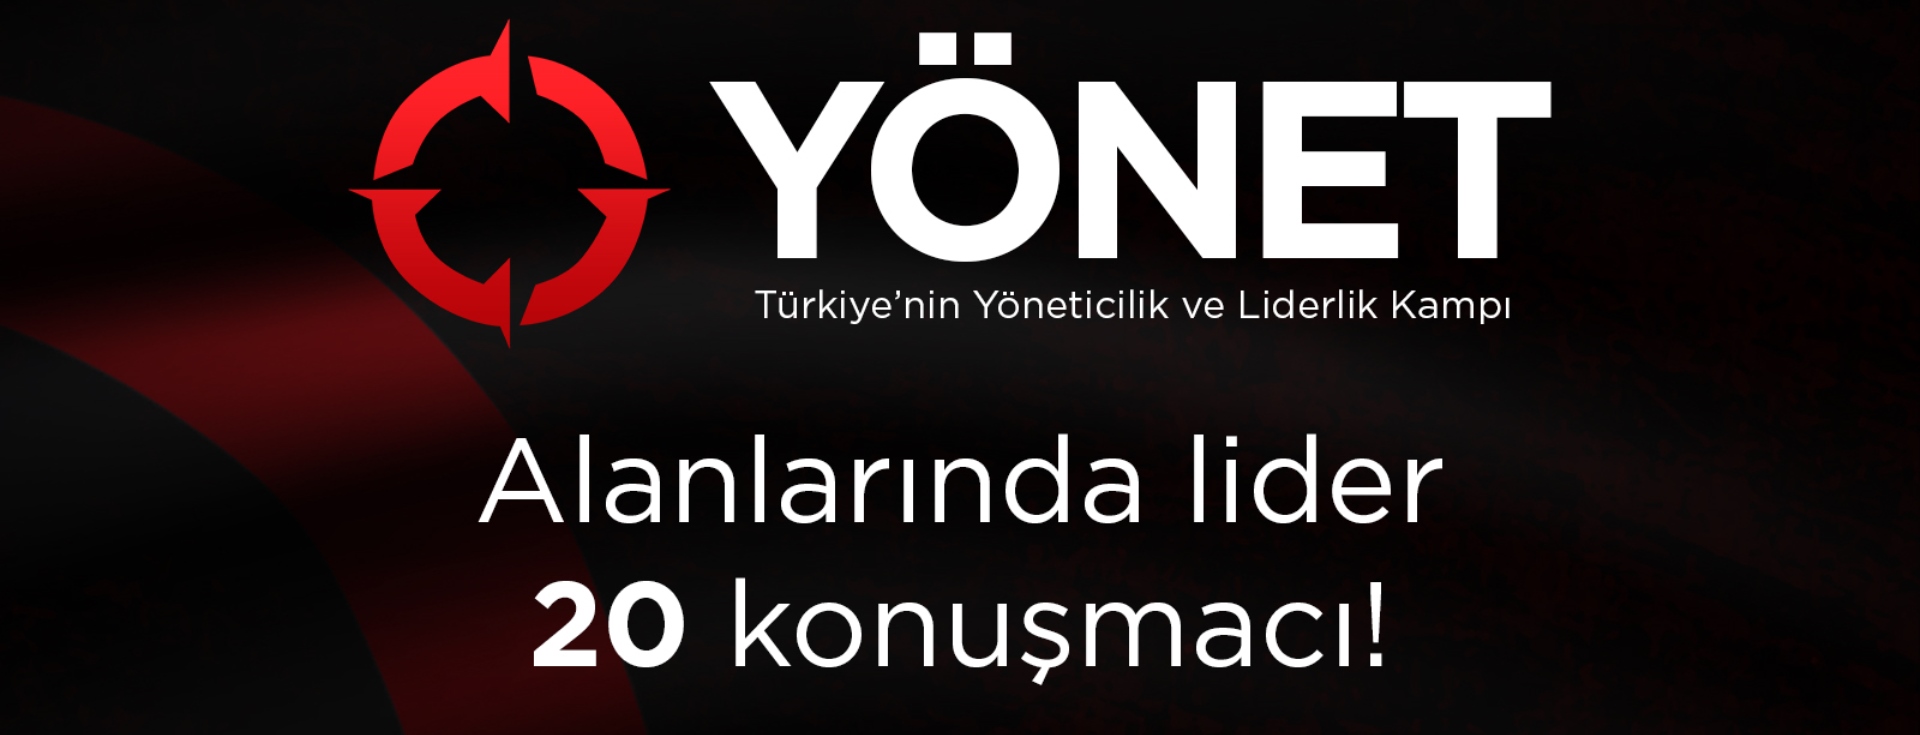 Türkiye'nin Yöneticilik ve Liderlik Kampı YÖNET 23-25 Şubat'ta Ankara'da